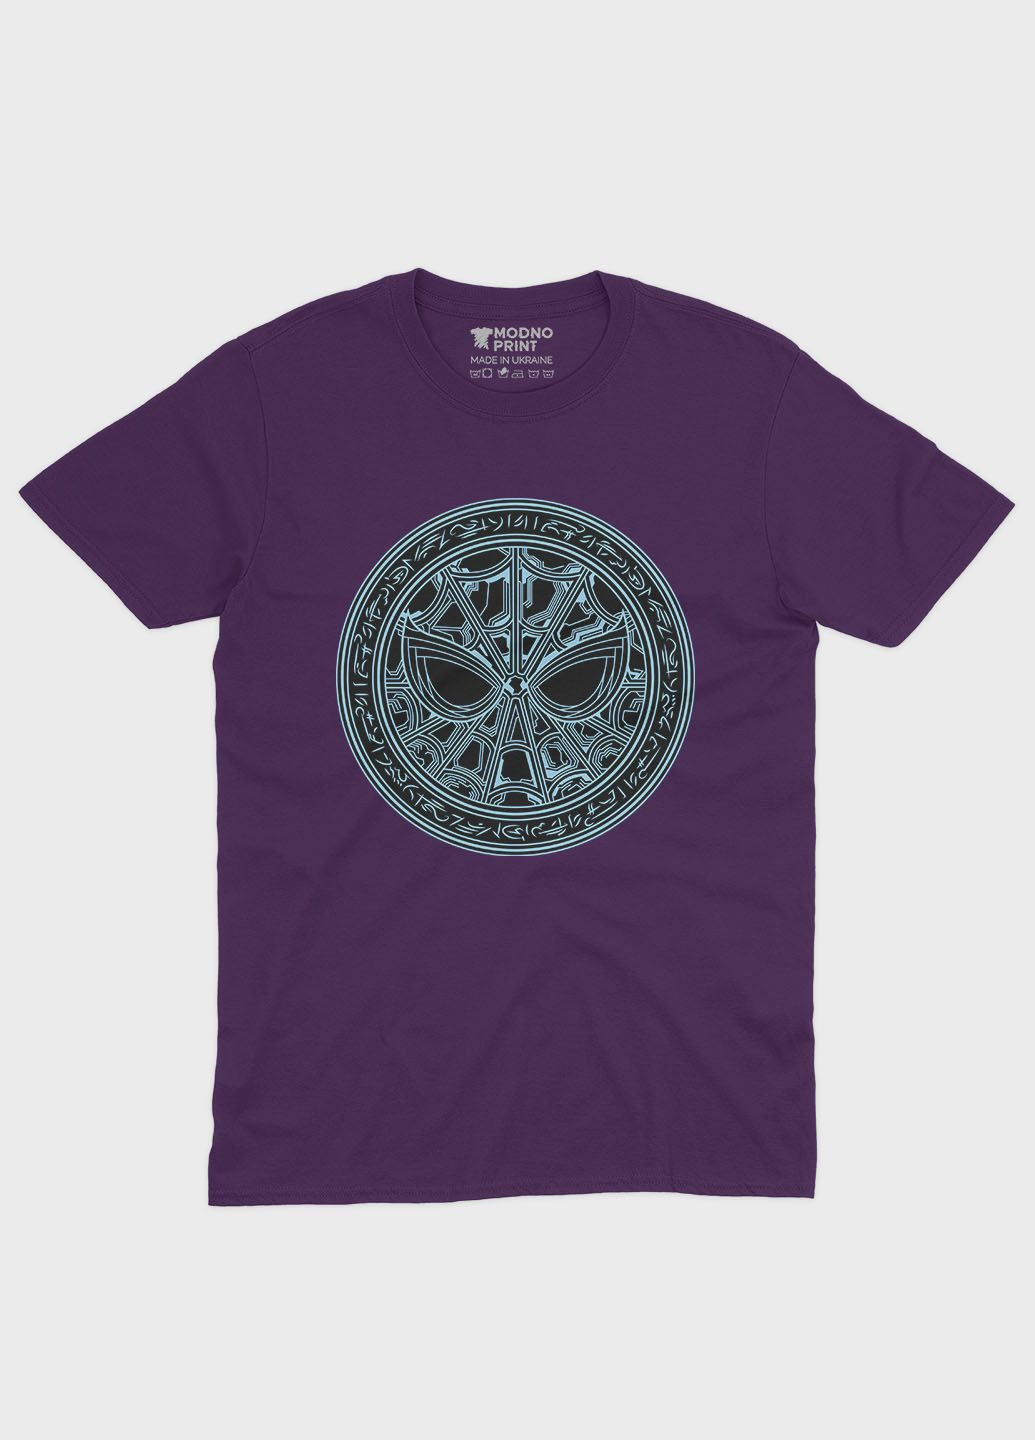 Фіолетова демісезонна футболка для хлопчика з принтом супергероя - людина-павук (ts001-1-dby-006-014-088-b) Modno